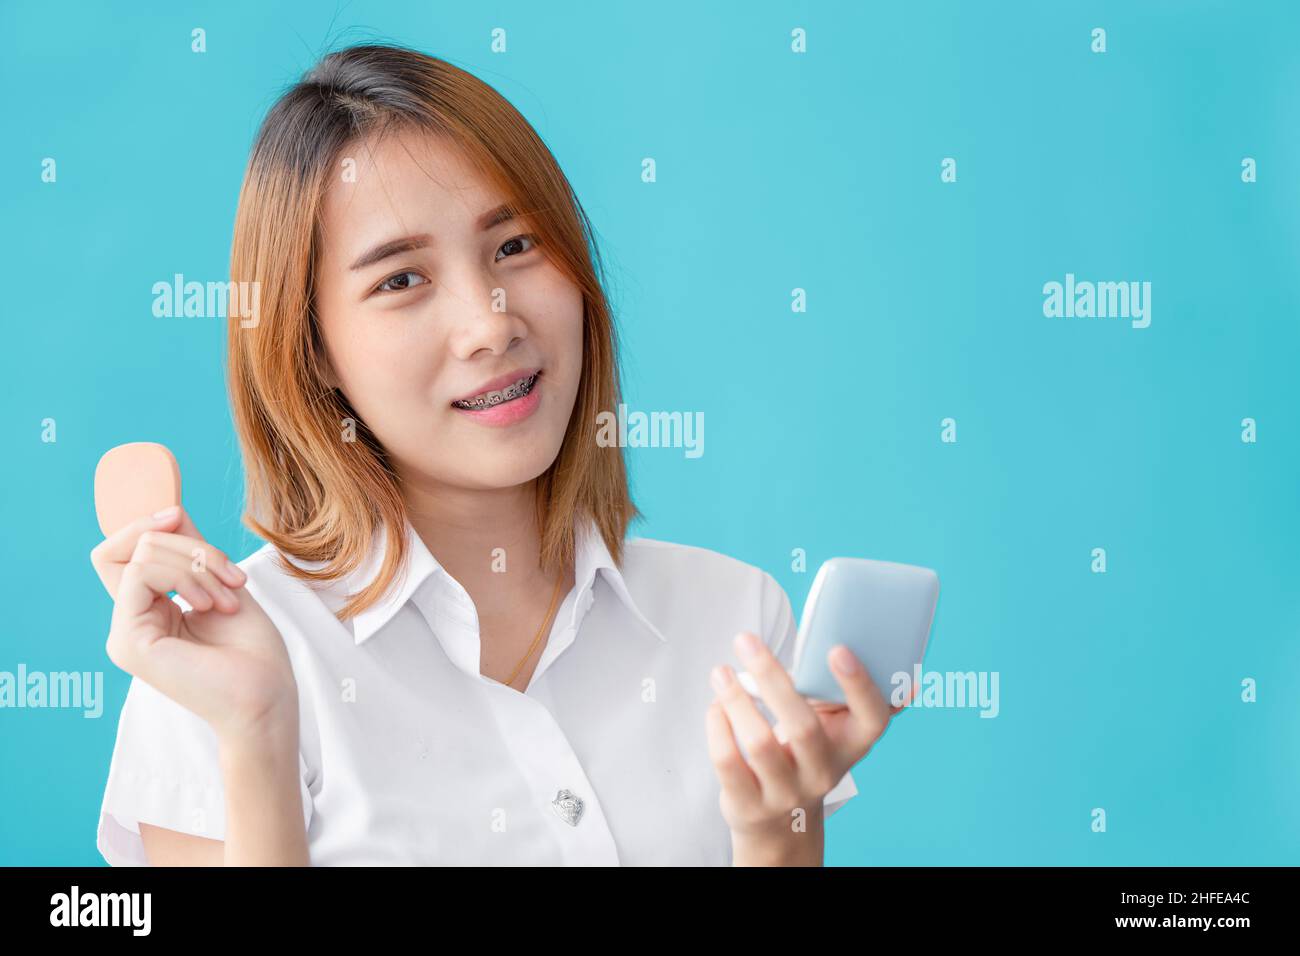 Universidad asiática adolescente mano sosteniendo maquillaje cara polvo belleza feliz sonrisa Foto de stock